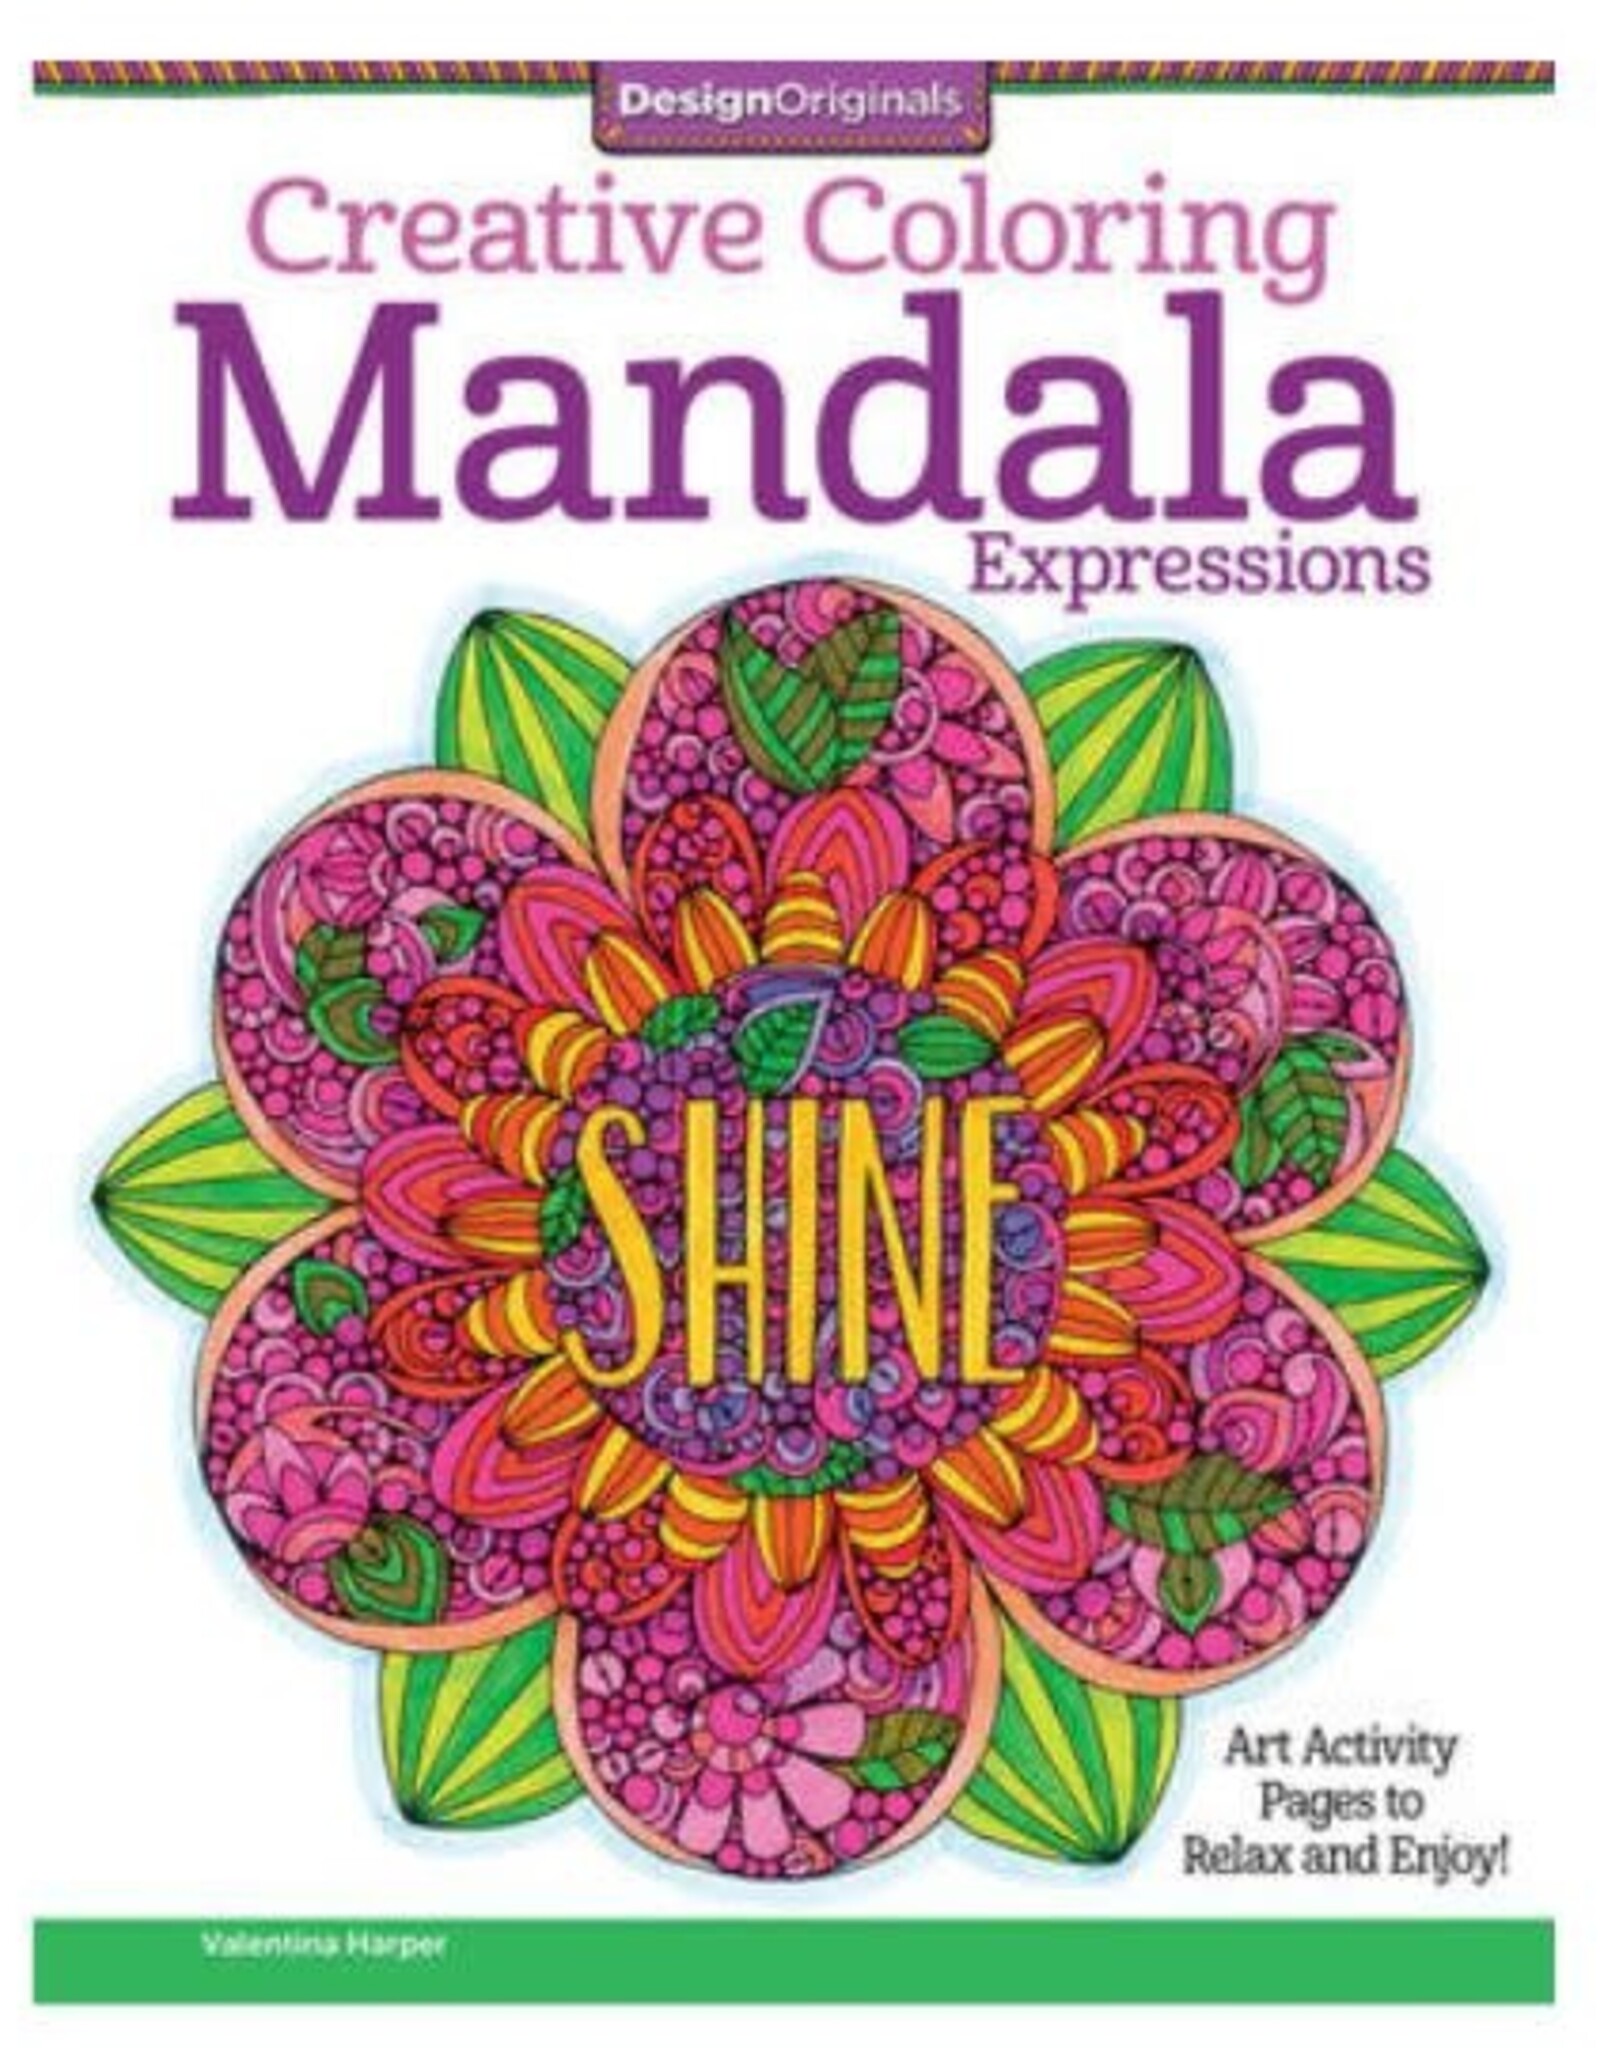 Design Originals Mandala Expressions Coloring Book